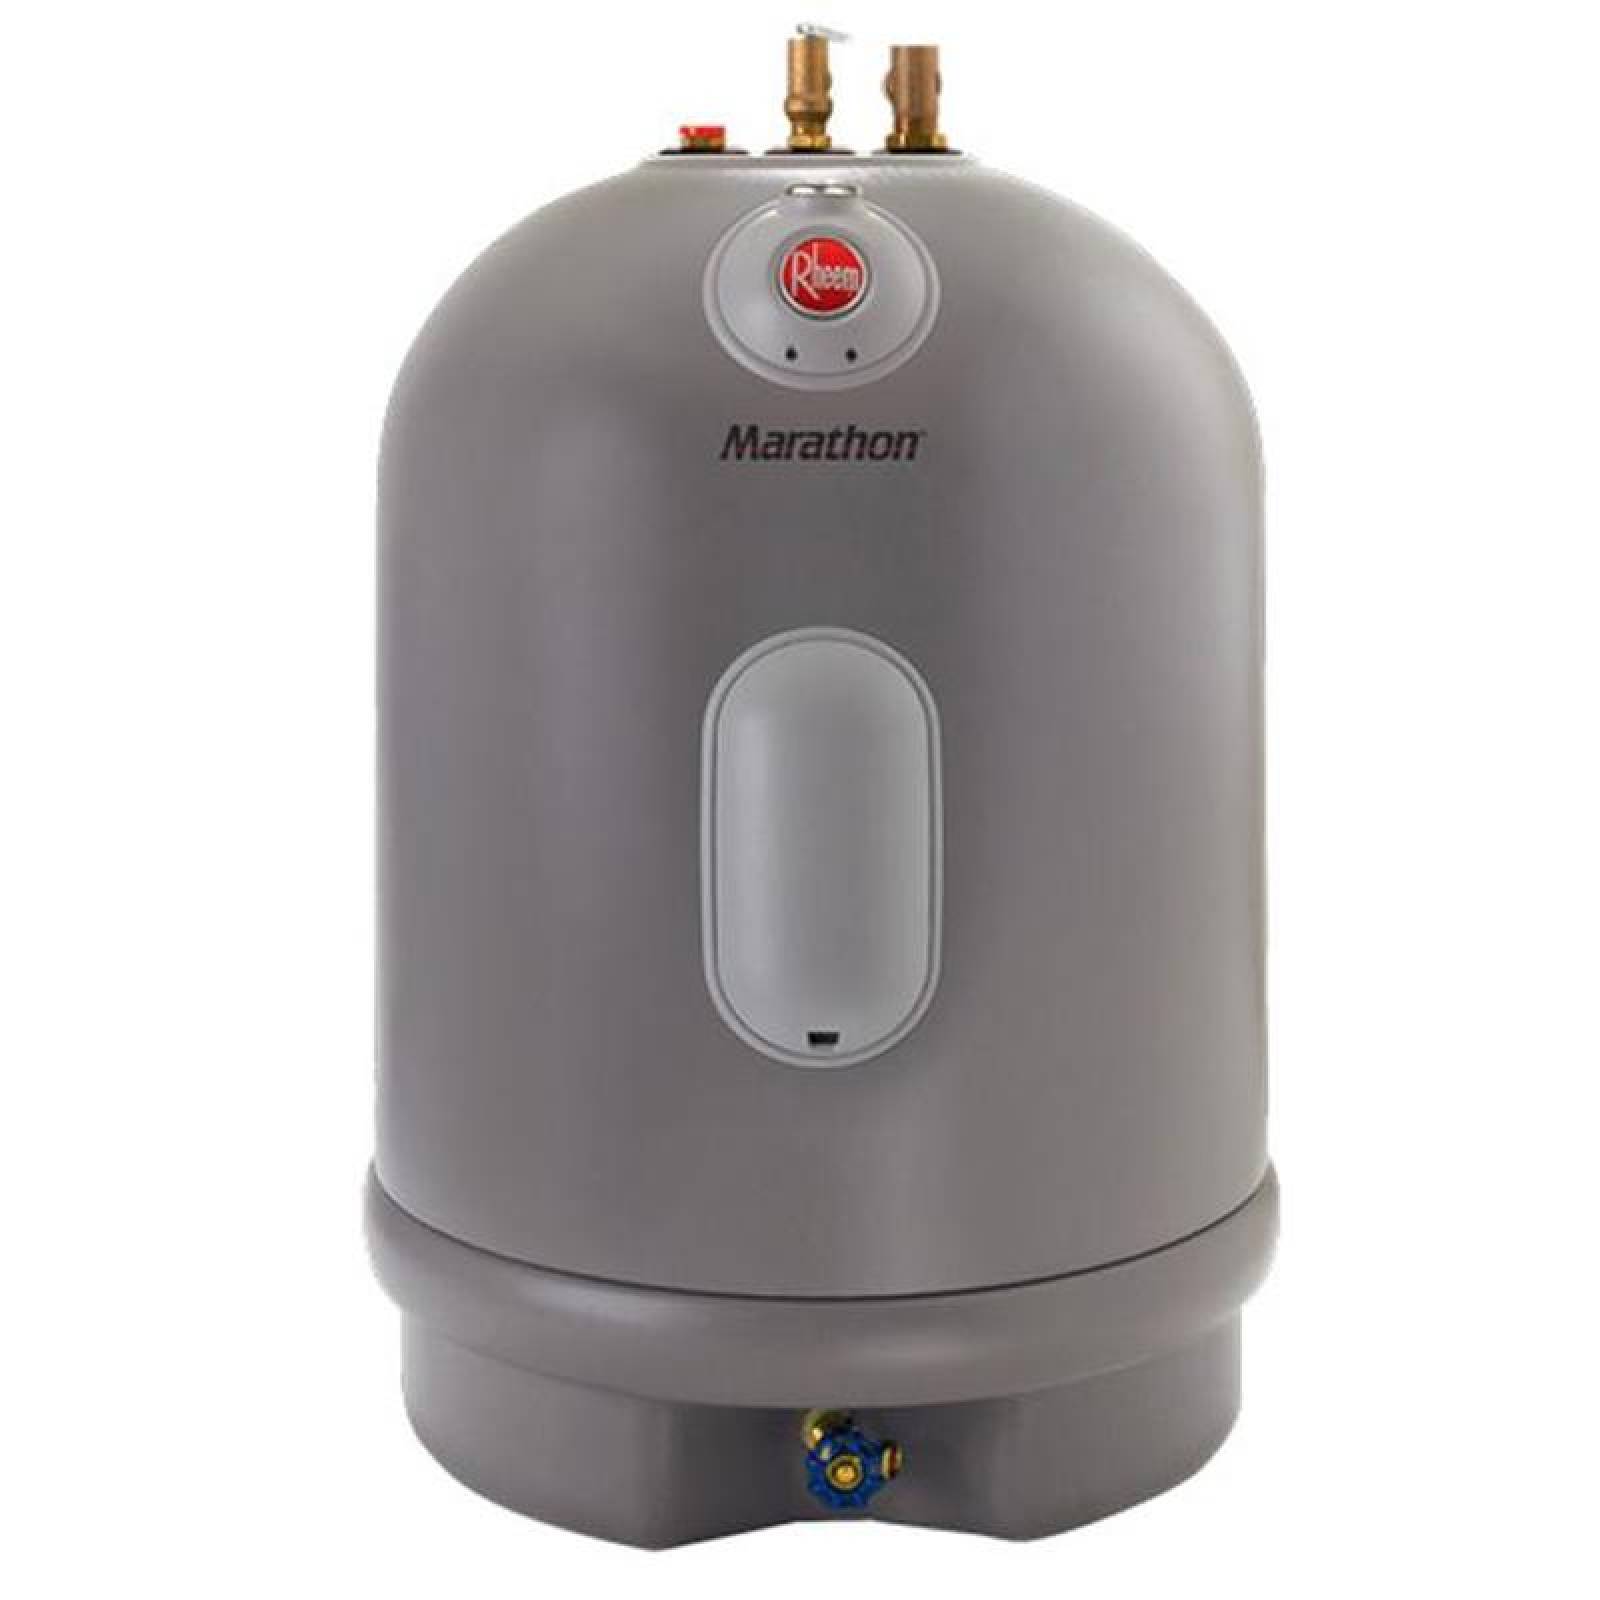  Boiler de Agua Comercios, MXMHN-001-3, 57 Litros, 127V/1F/60Hz, 20A, 2000W, Calentador Depósito, 1.5 Servicios, Diseño Corto, Marathon